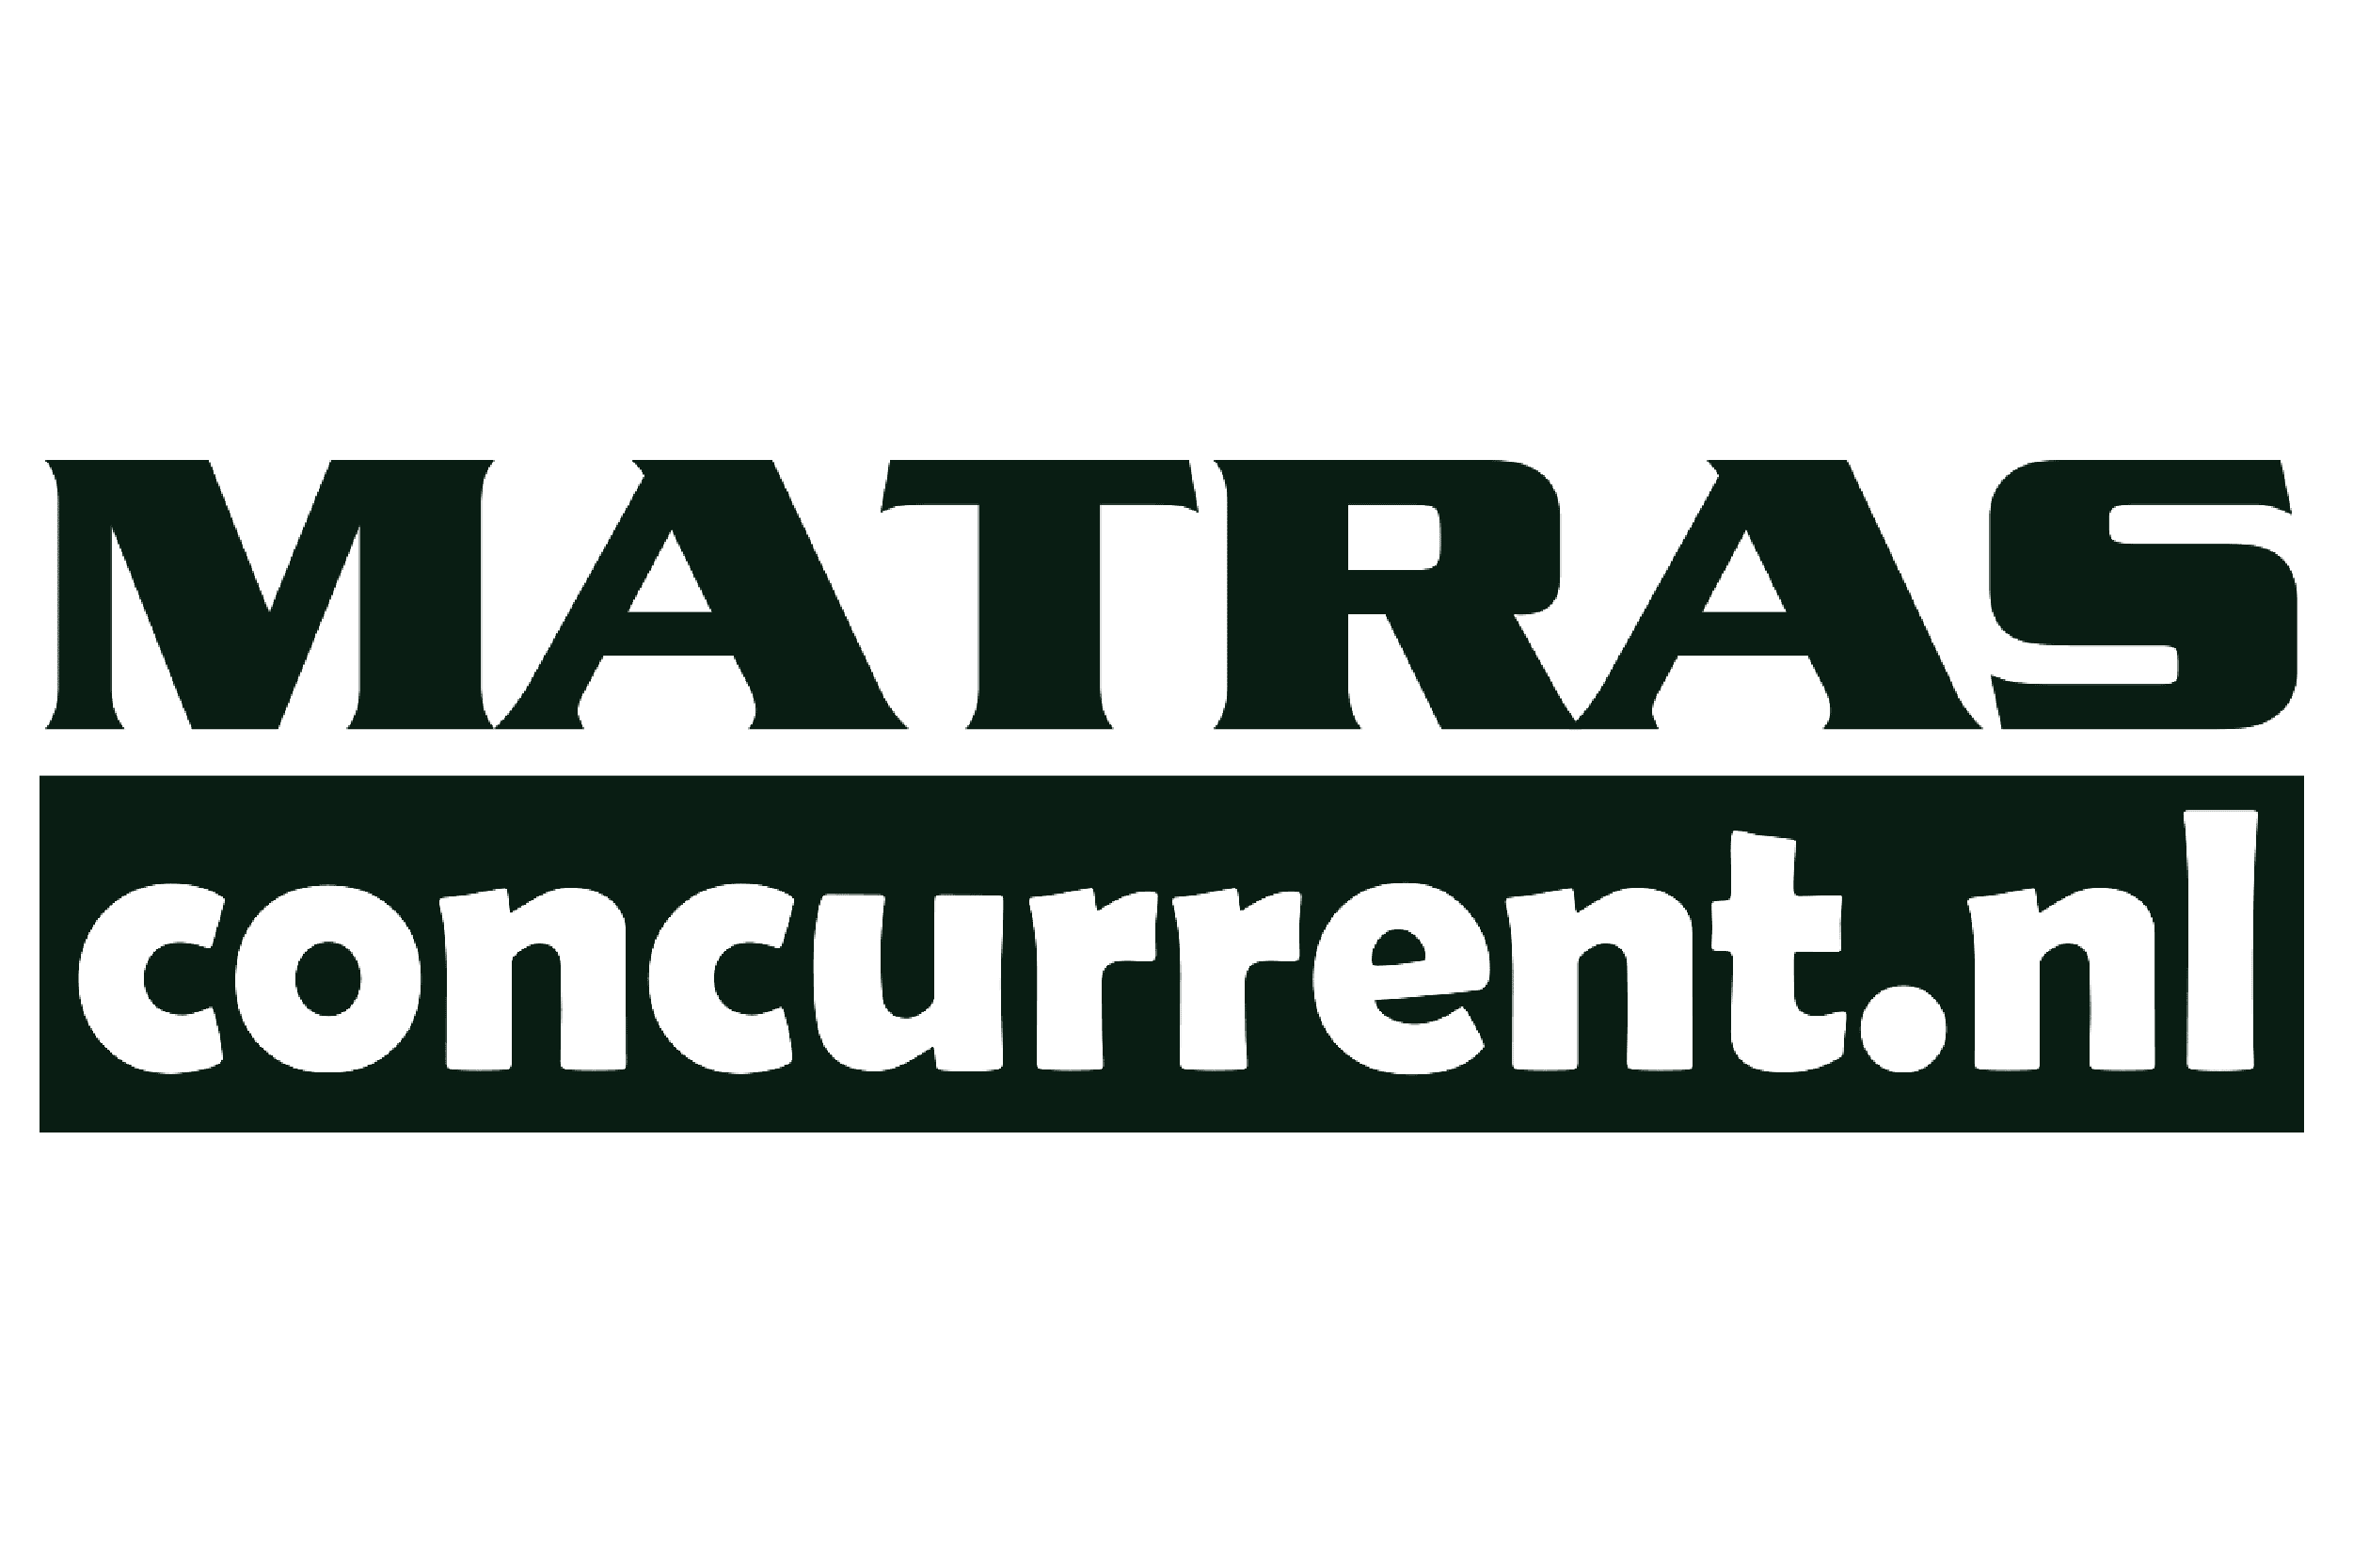 Het logo van Matras concurrent